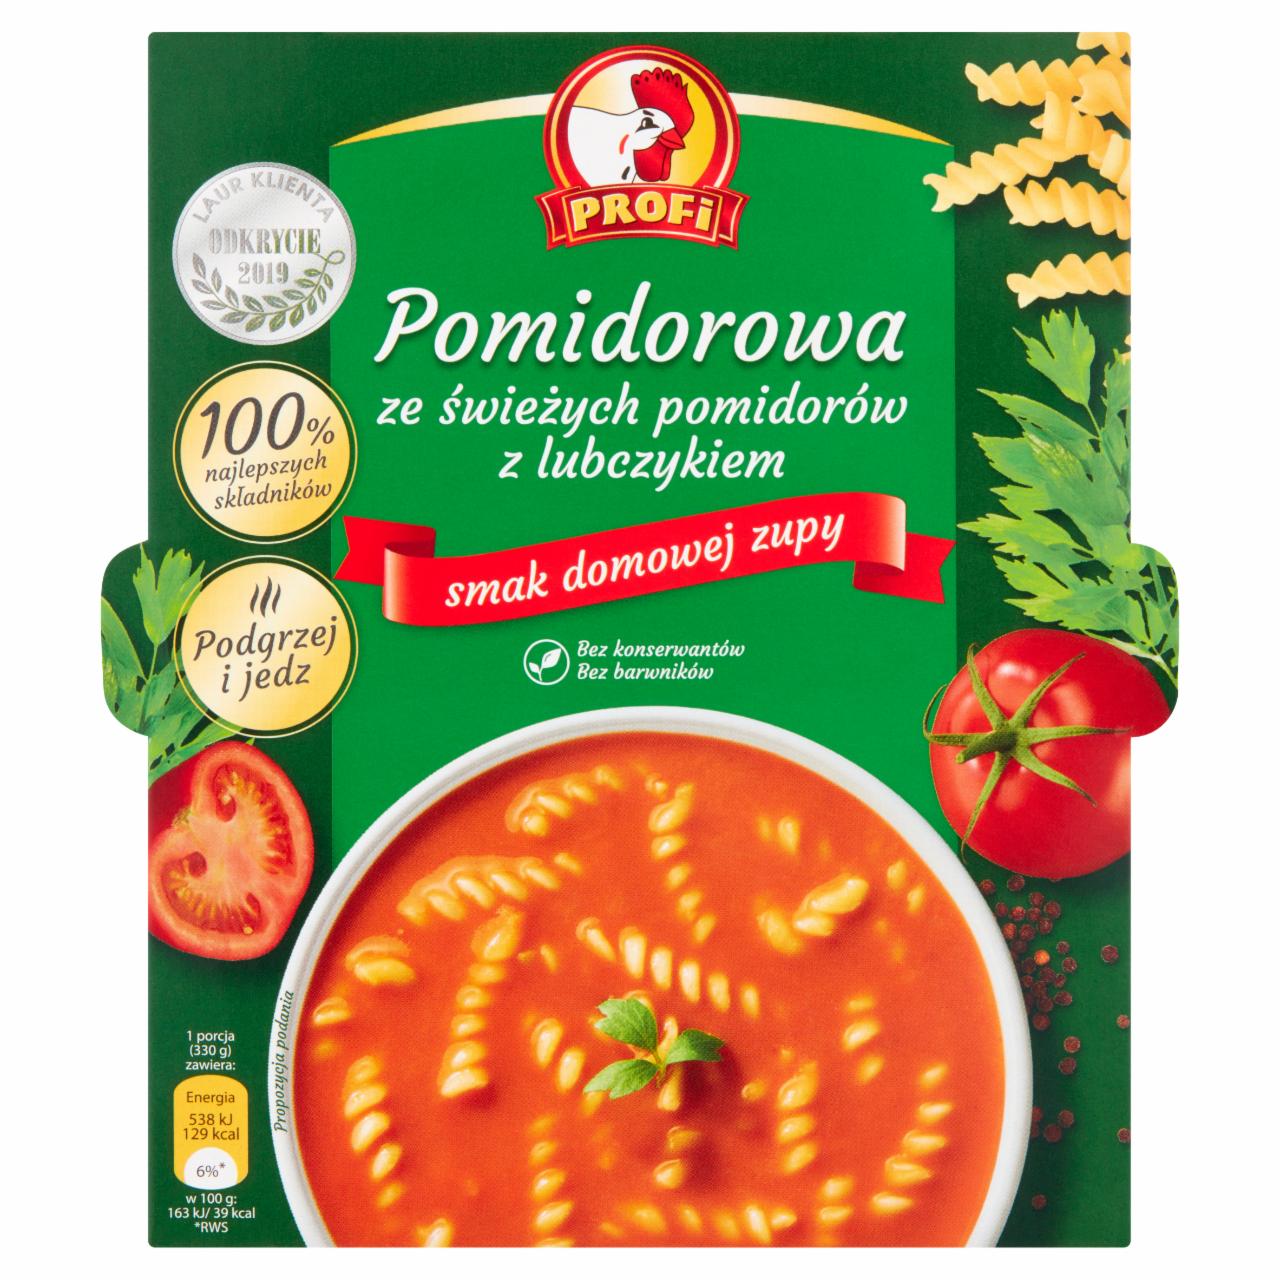 Zdjęcia - Profi Pomidorowa ze świeżych pomidorów z lubczykiem 330 g